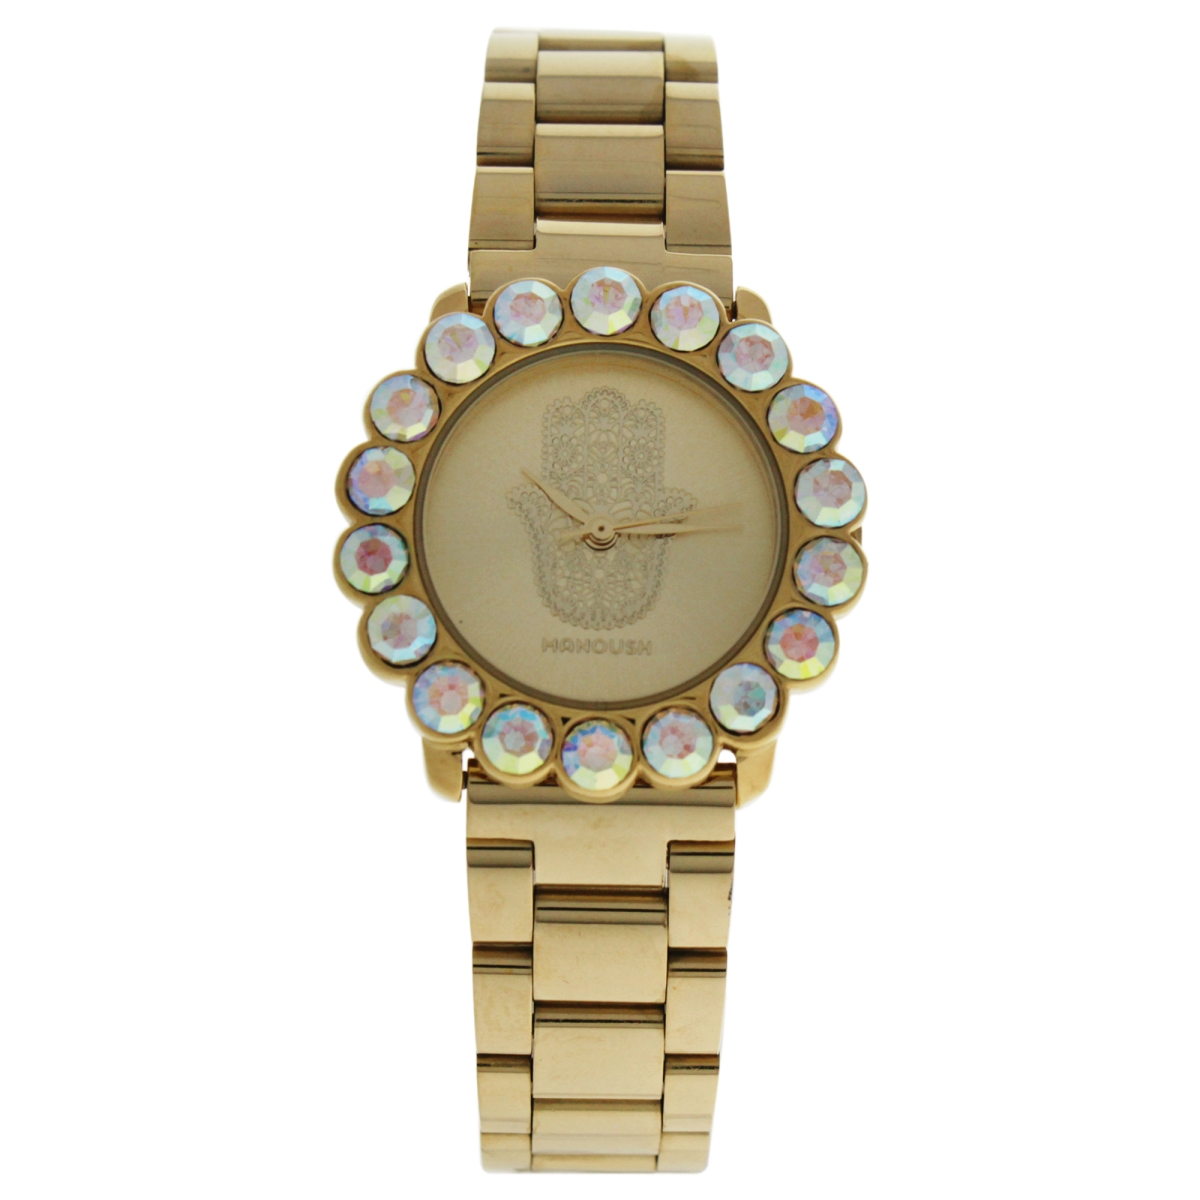 W-wat-1502 Mshscg Scarlett Hand - Stainless Steel Bracelet Watch For Women, Gold